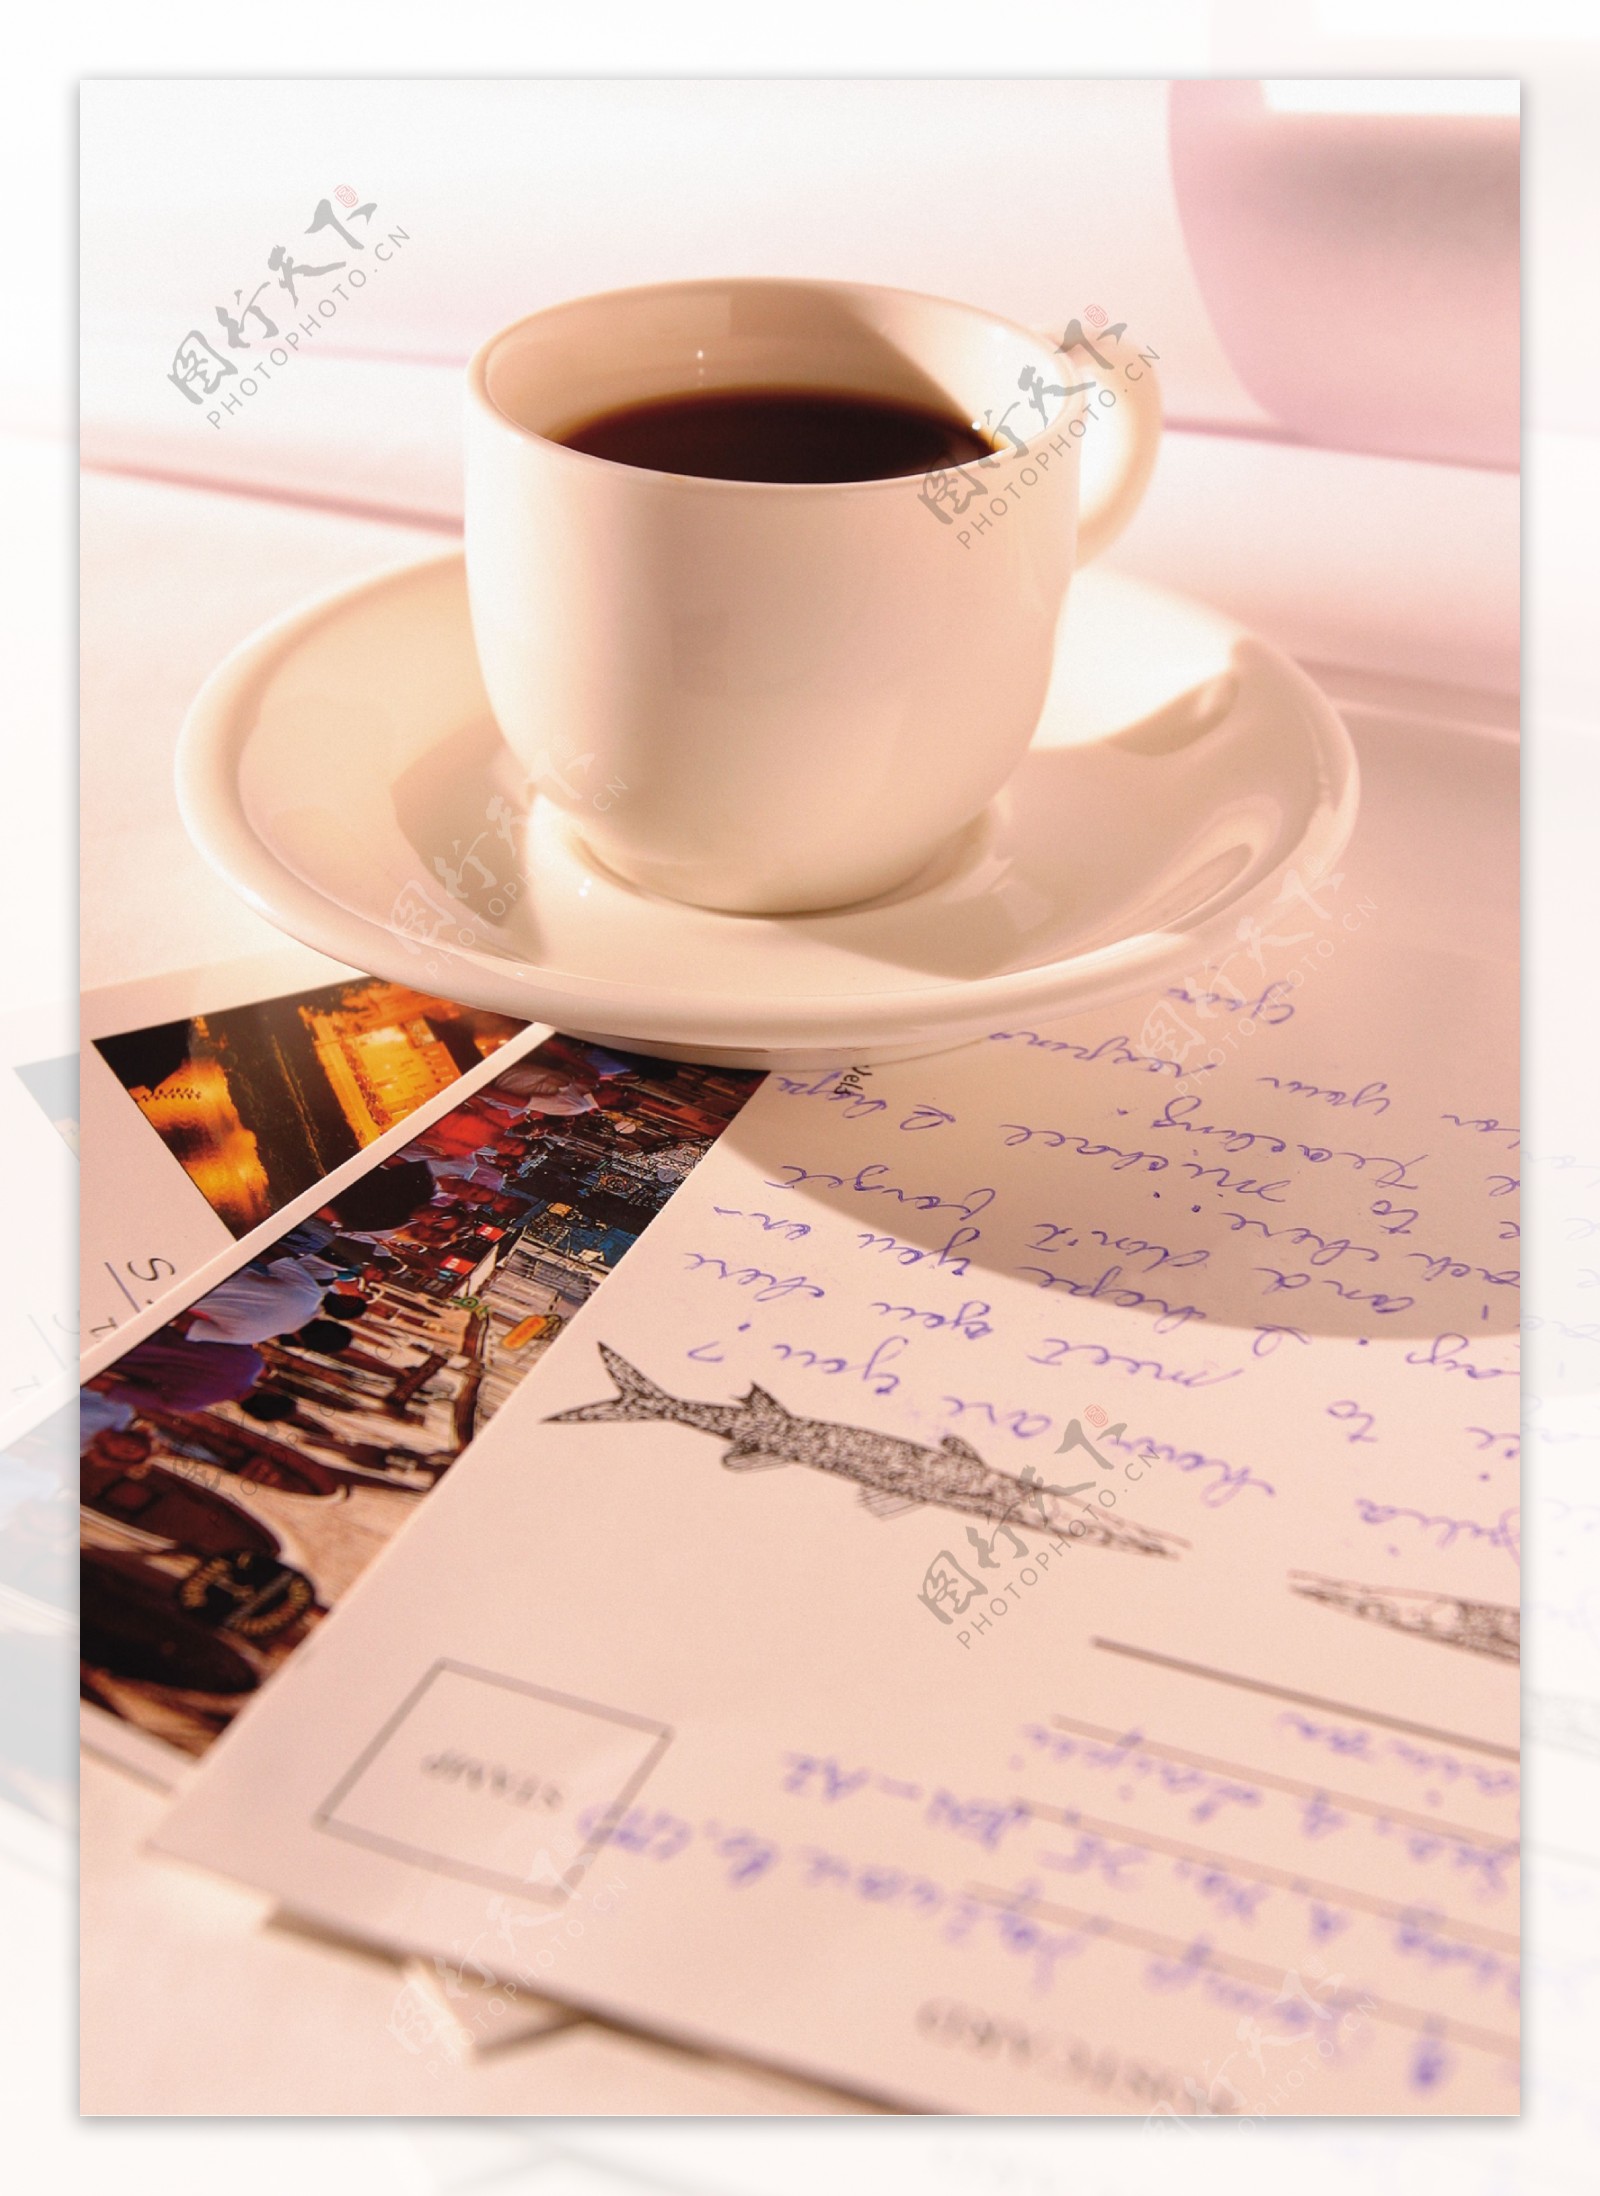 一杯咖啡明信片图片